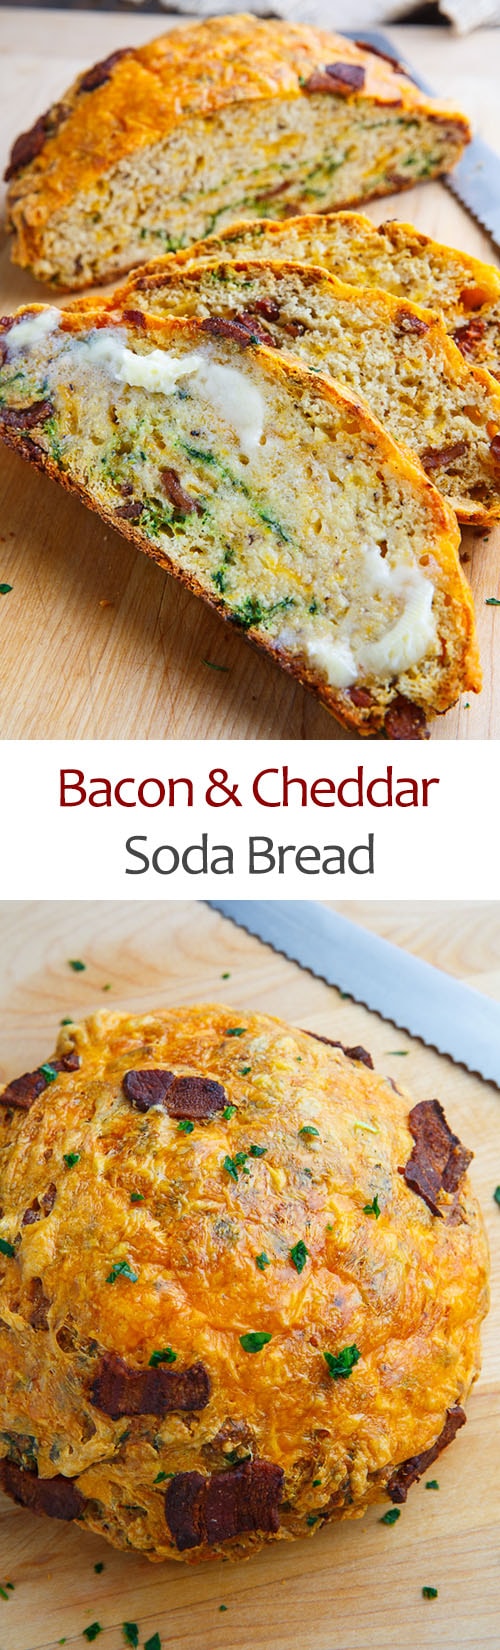 Bacon and Cheddar Soda Bread